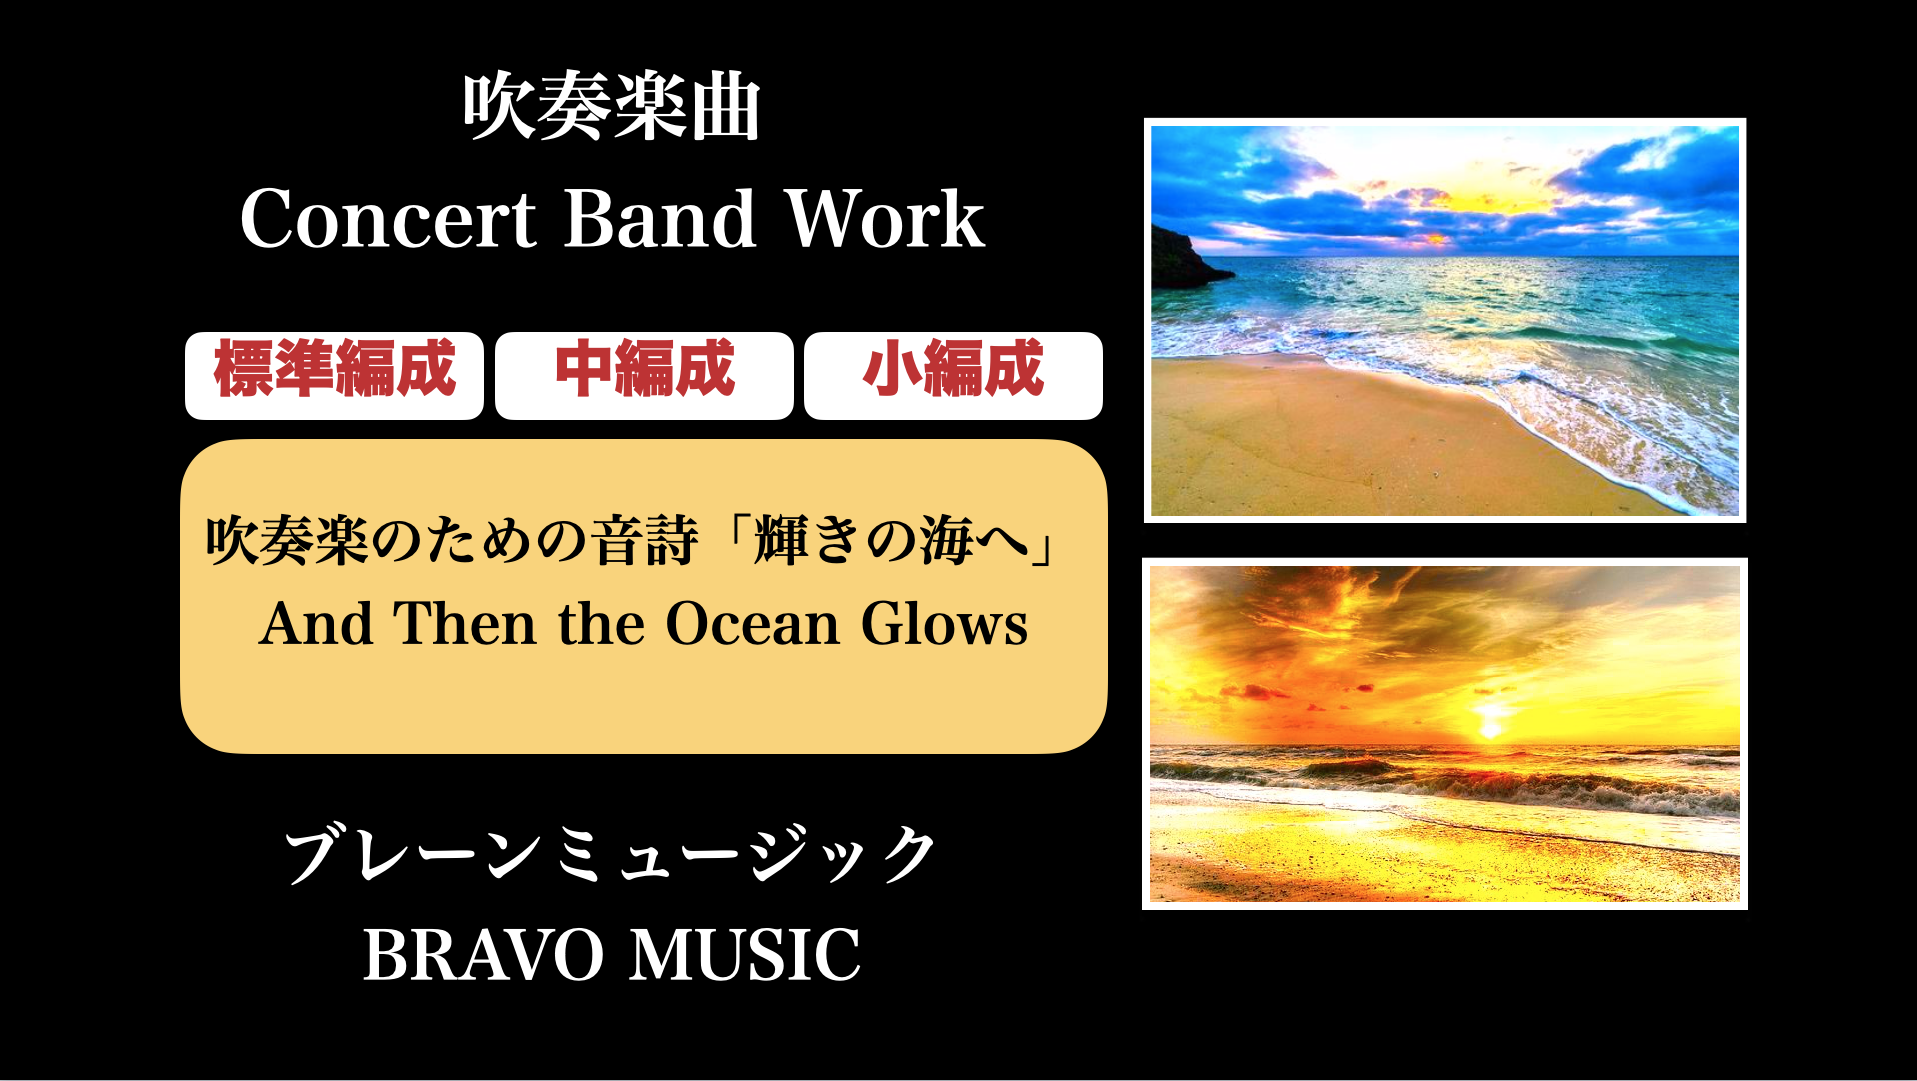 吹奏楽のための音詩 輝きの海へ A Tone Poem For Windorchestra And Then The Ocean Glows 作曲家 八木澤教司 公式hp Satoshi Yagisawa